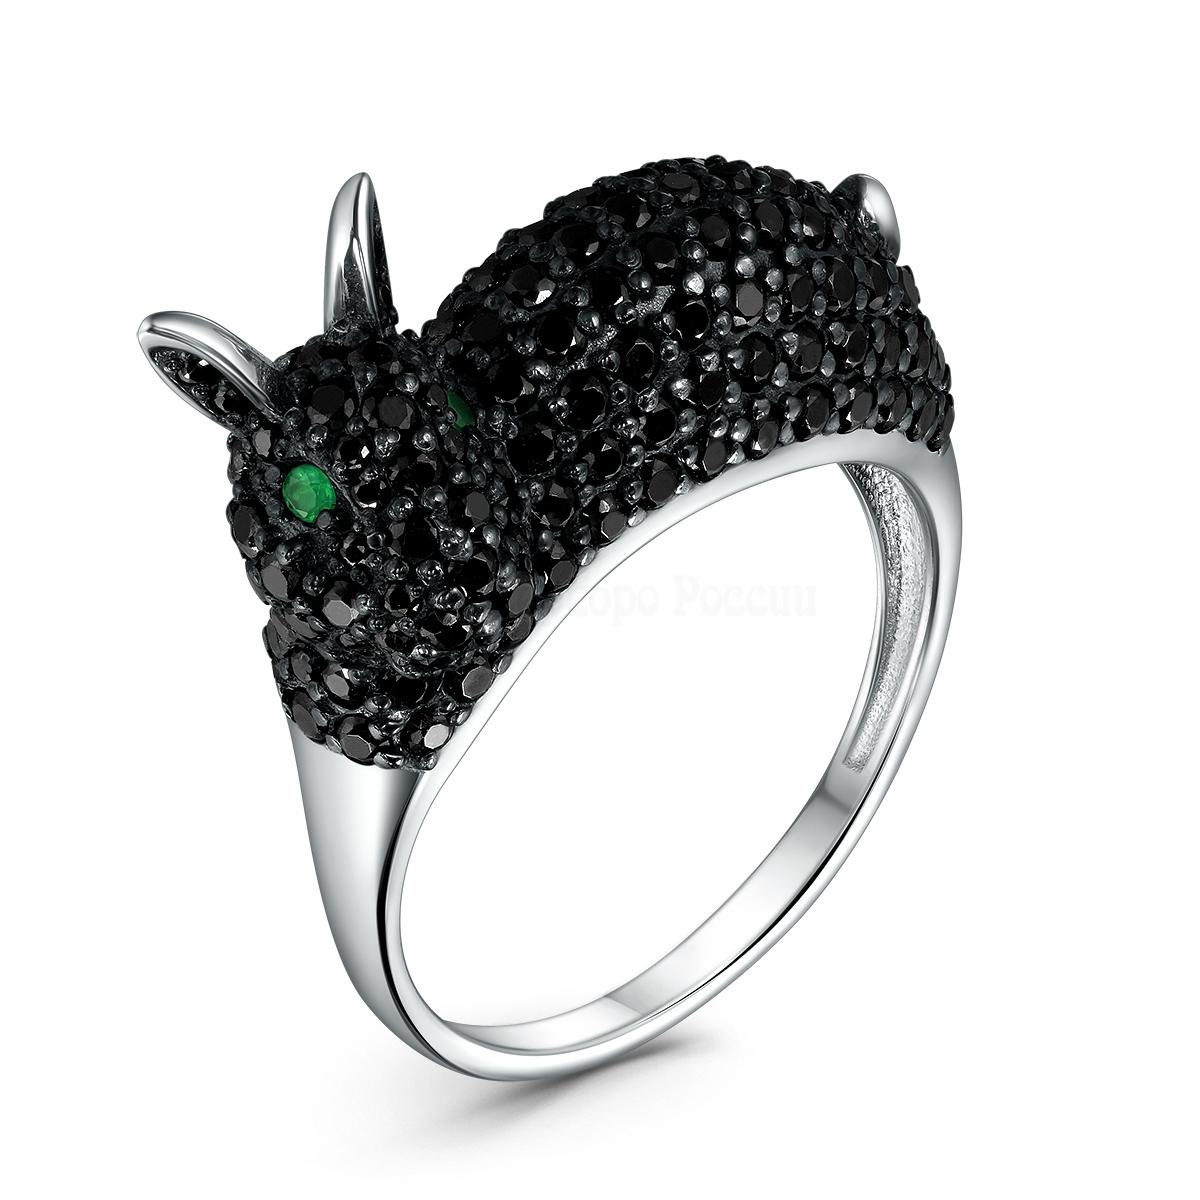 Кольцо из серебра с зелёным агатом и чёрной шпинелью родированное - Кролик 1-505рч41609 1-505рч41609